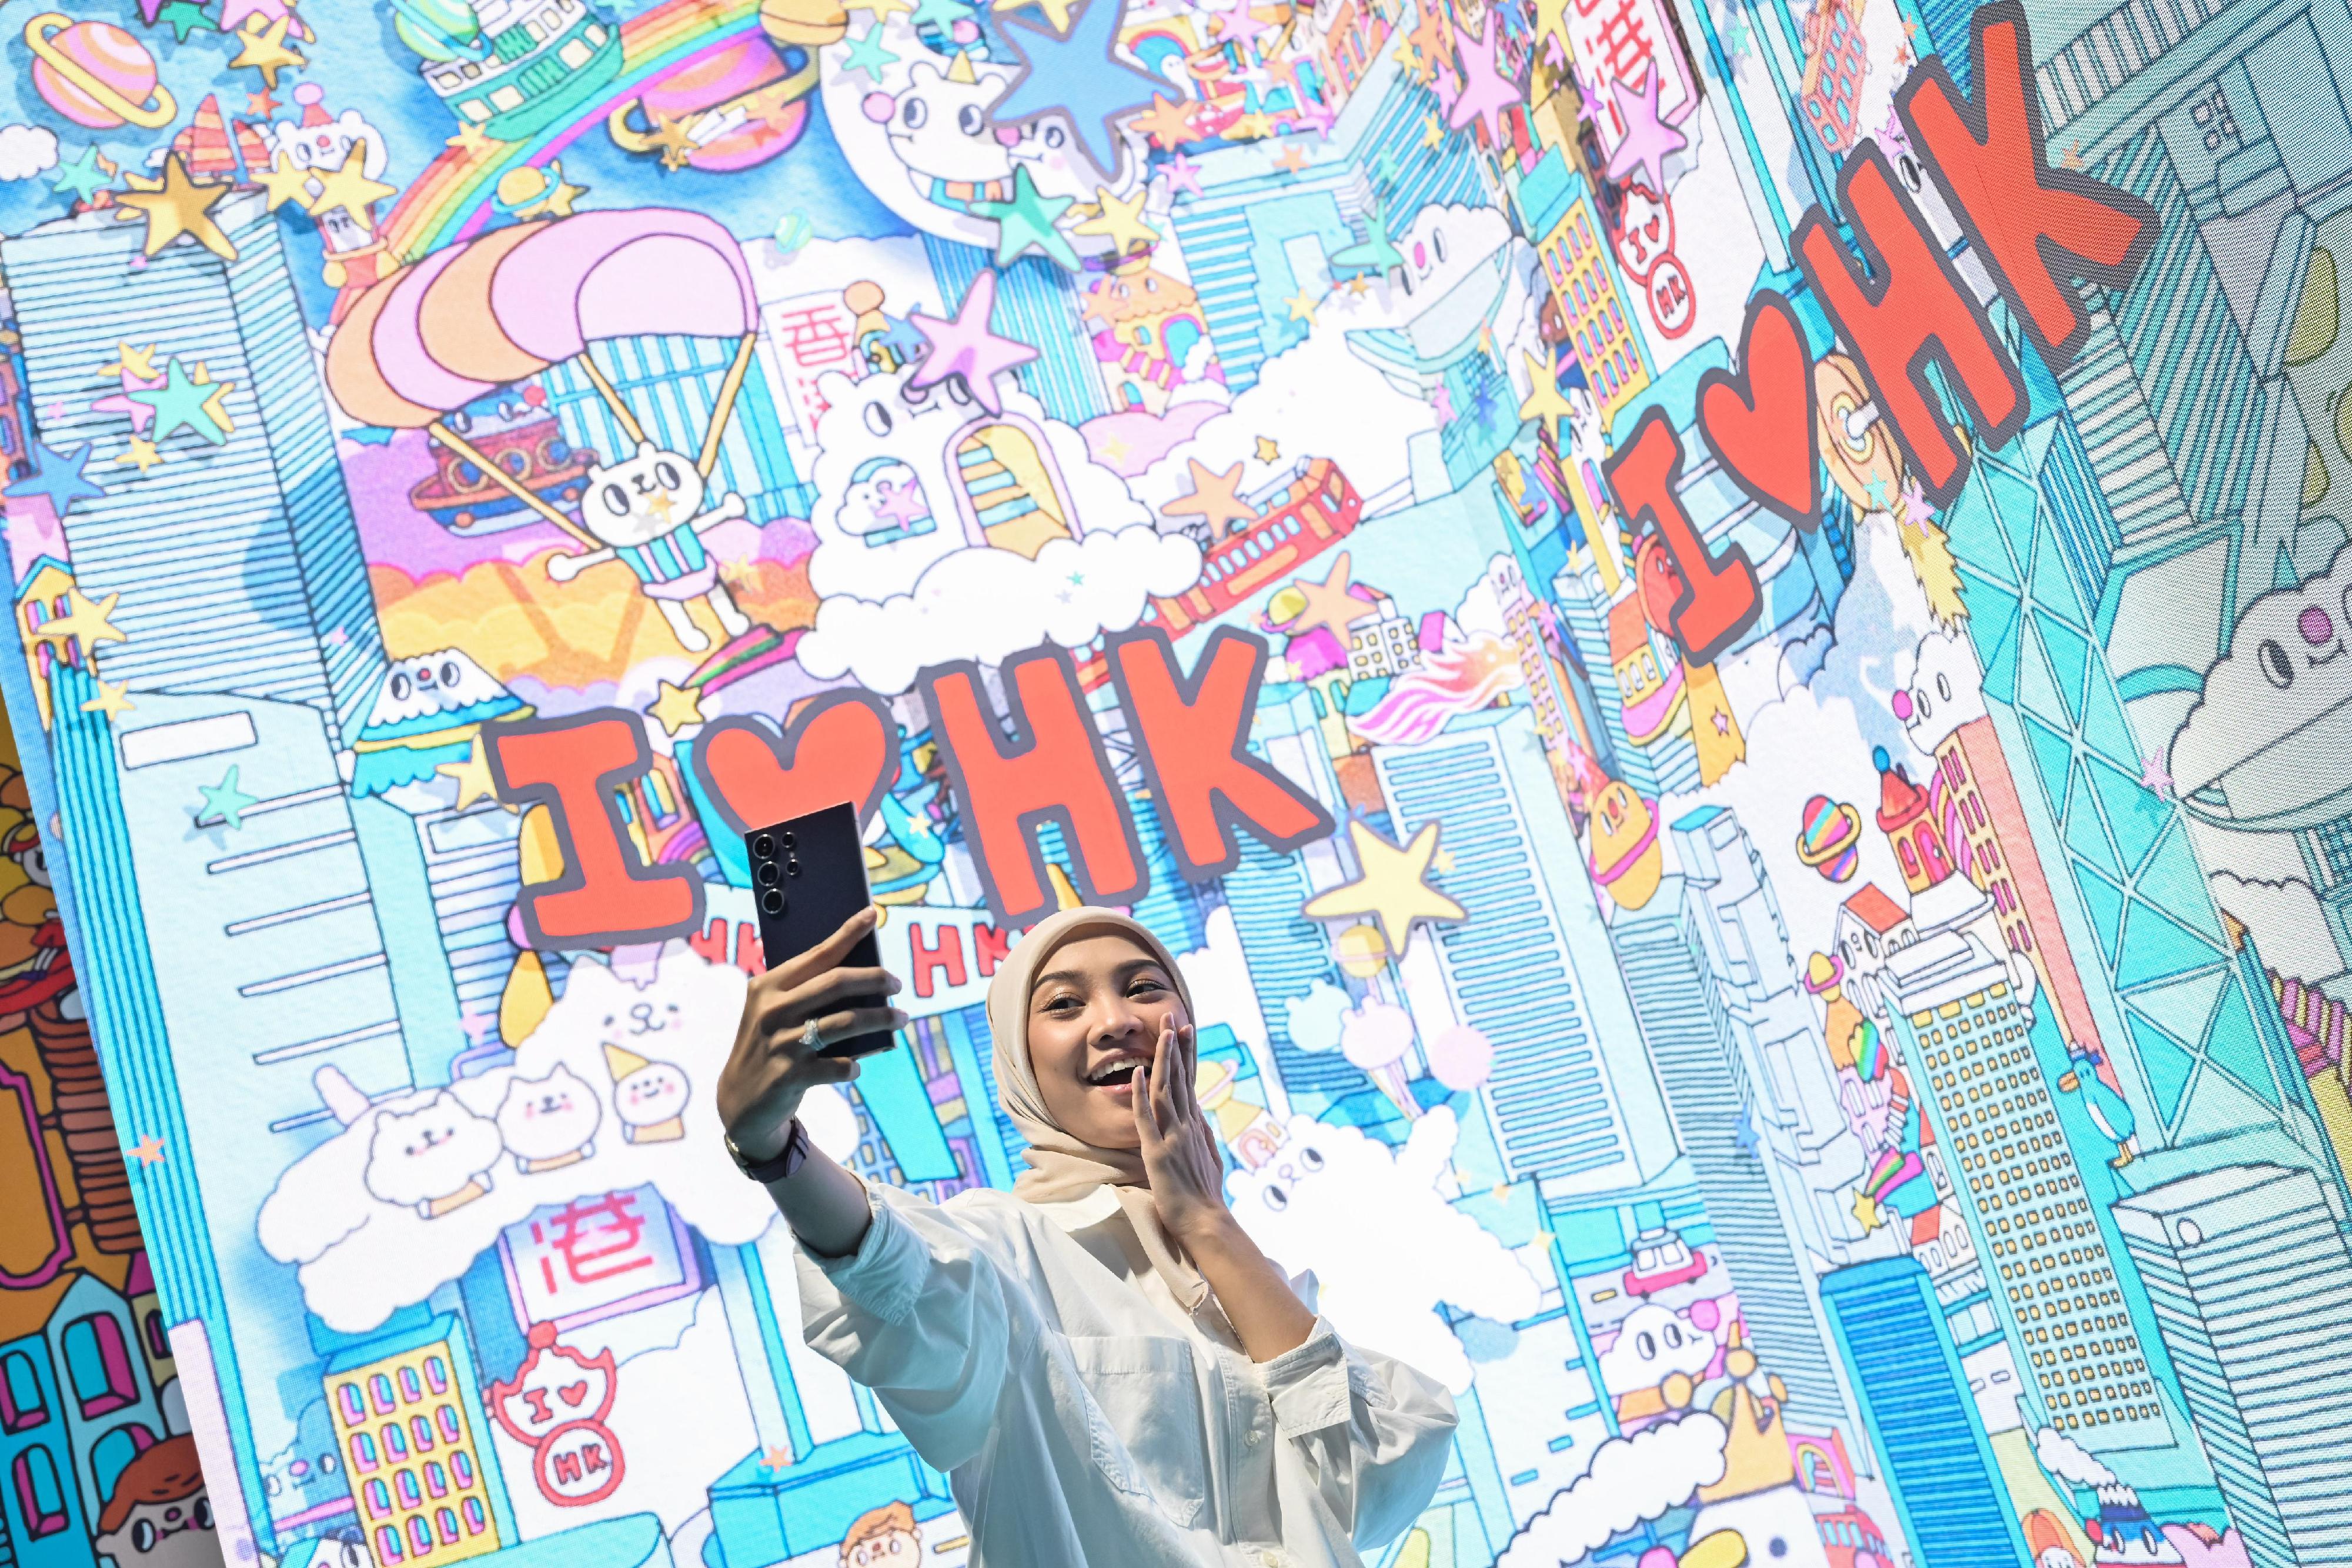 「香港─沉浸式之旅」巡回展览今日（三月三日）在马来西亚吉隆坡展开，以艺术科技展示香港独有的实力、优势和机遇，是特区政府在东南亚国家联盟国家举办的推广活动之一。图为展览场内的拍照区，展示本地艺术家Messy Desk（李美欣）的插画设计。
